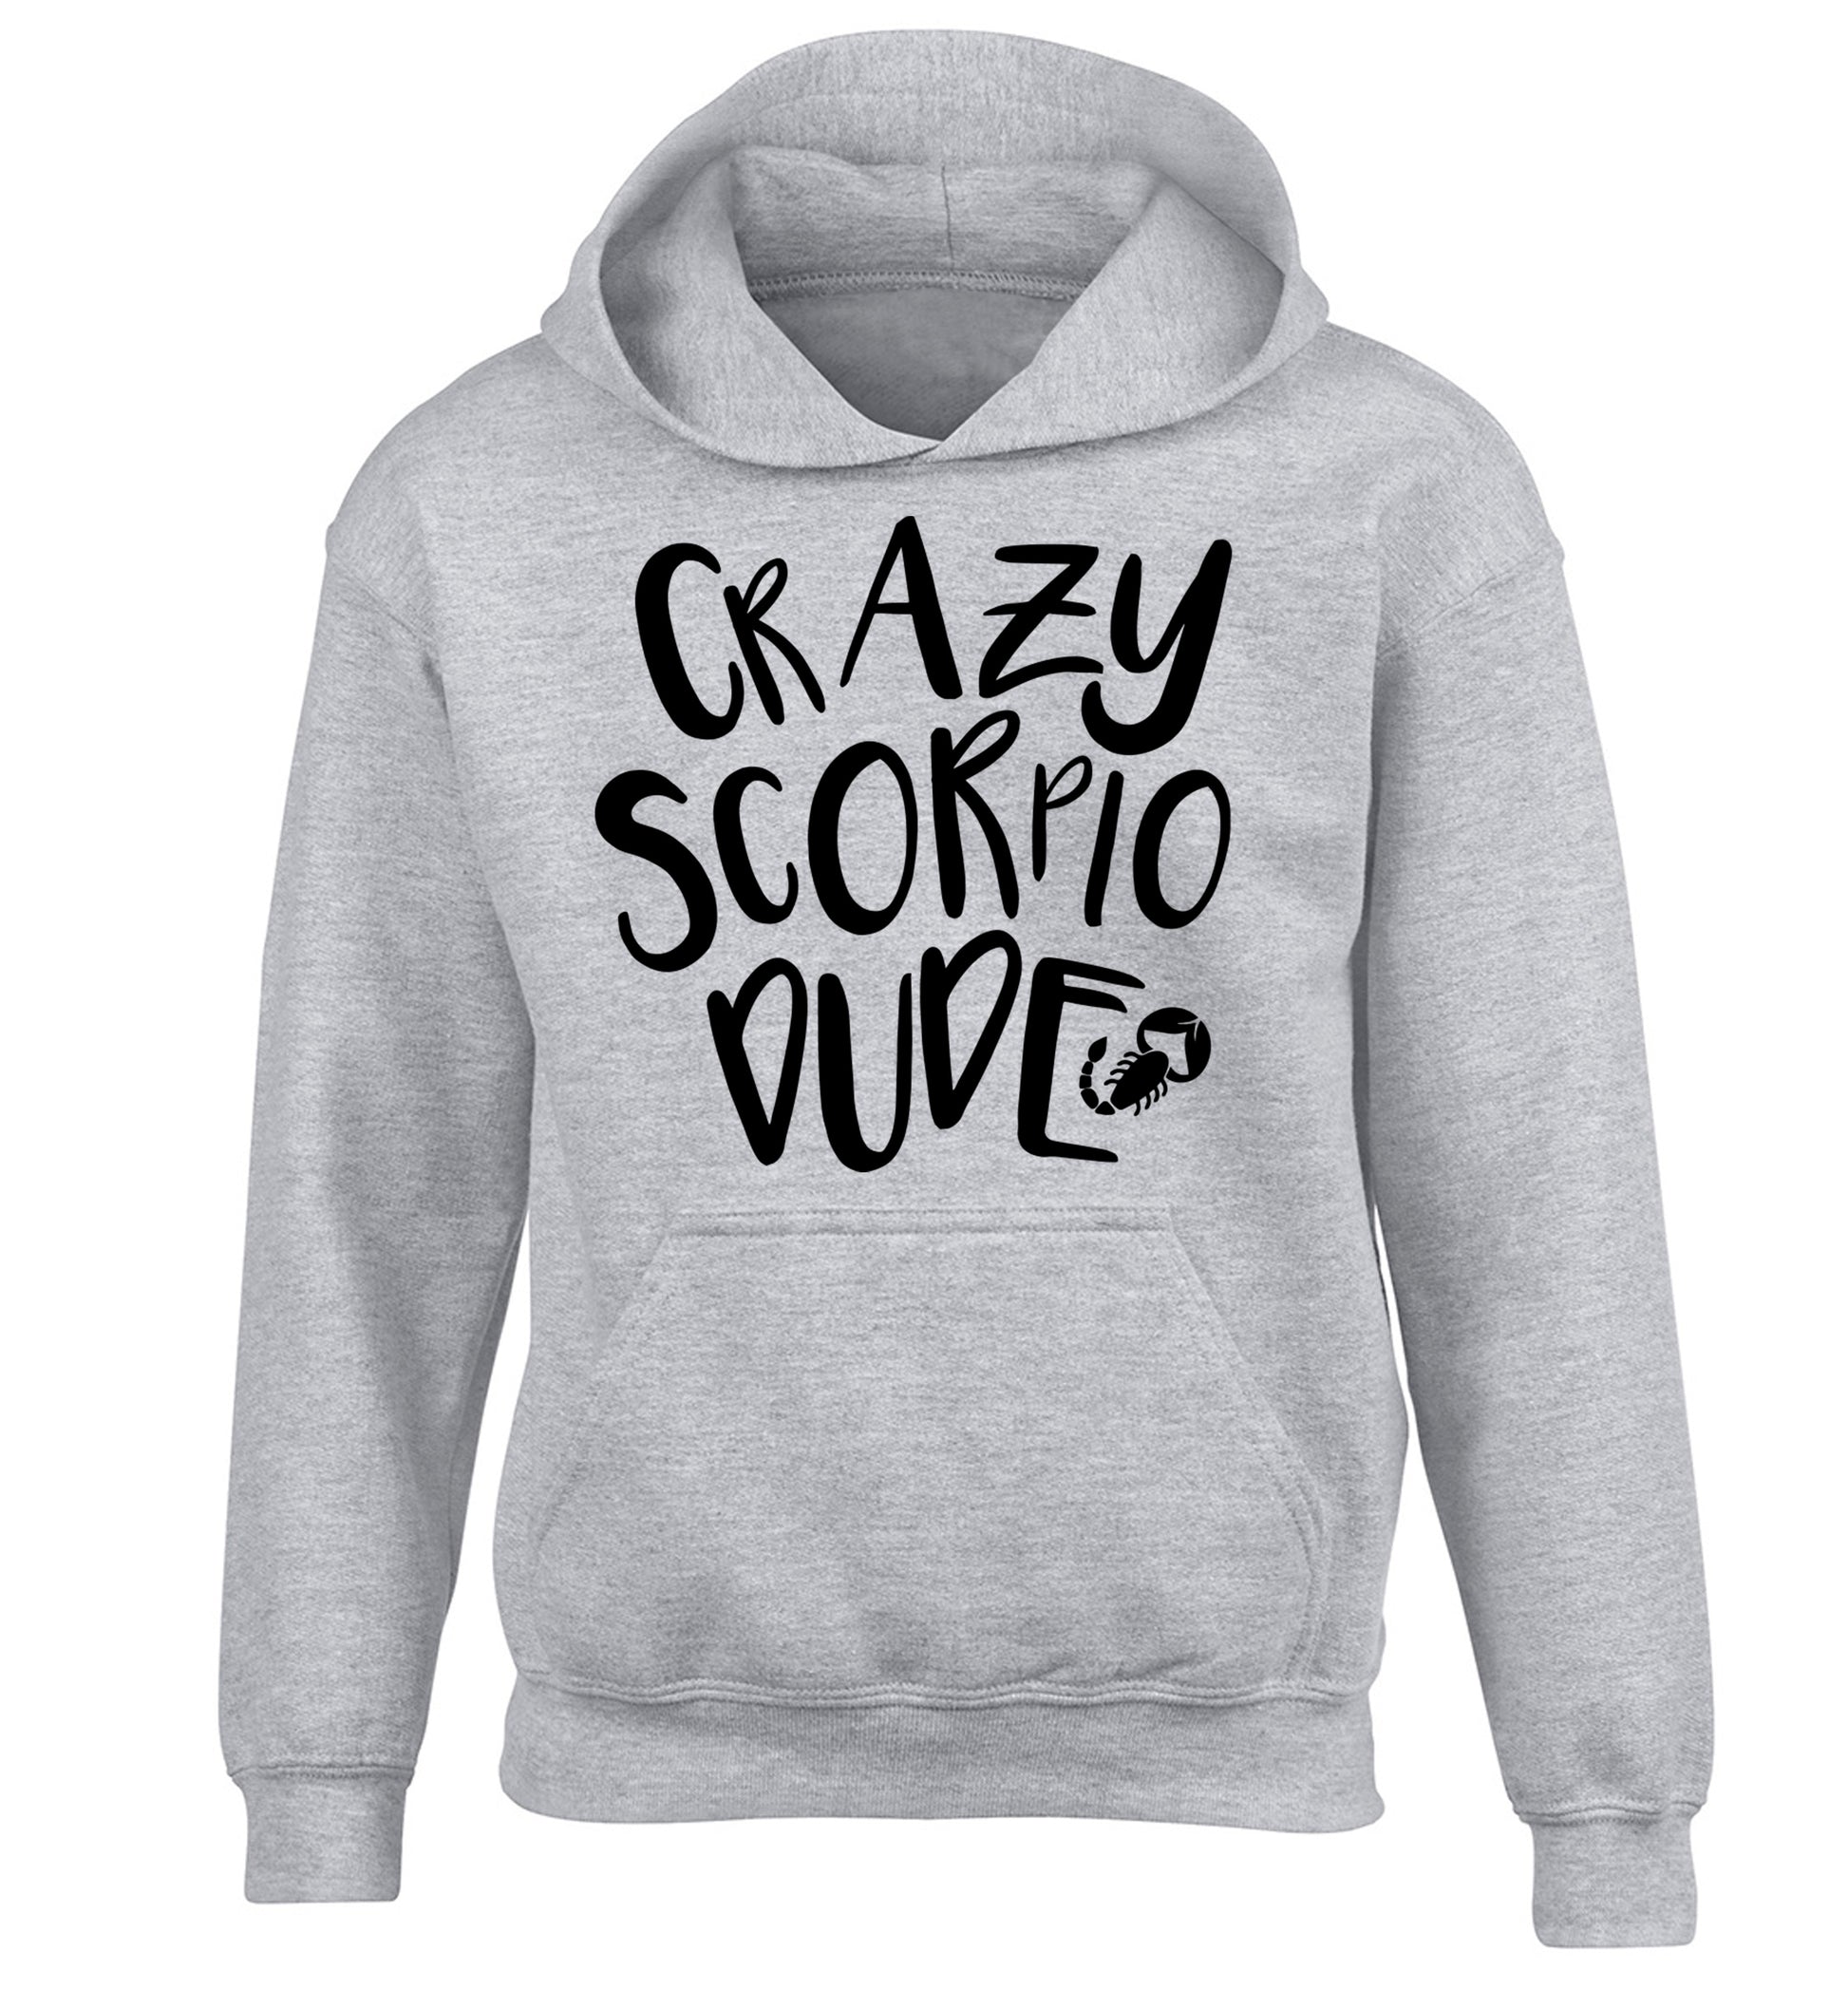 Crazy scorpio dude children's grey hoodie 12-13 Years